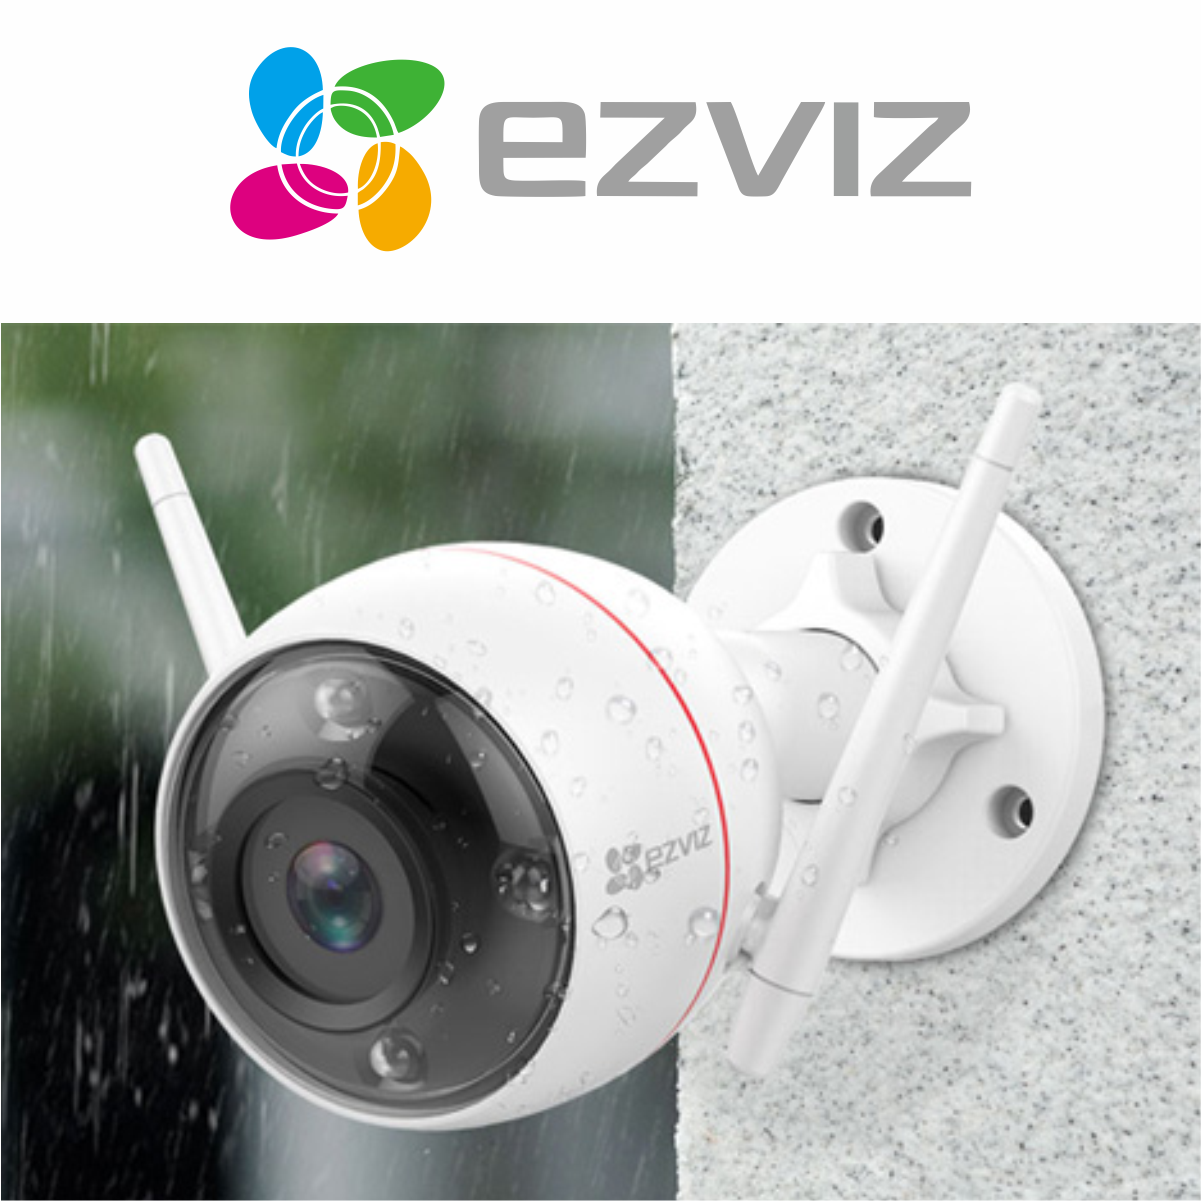 Camera EZVIZ C3W 1080P, WIFI, IP66 Ngoài Trời, 2 Ăng Ten, Hồng Ngoại Đêm 30m, Báo Động Với Đèn Báo Và Còi Hú Hỗ - Hàng Chính Hãng